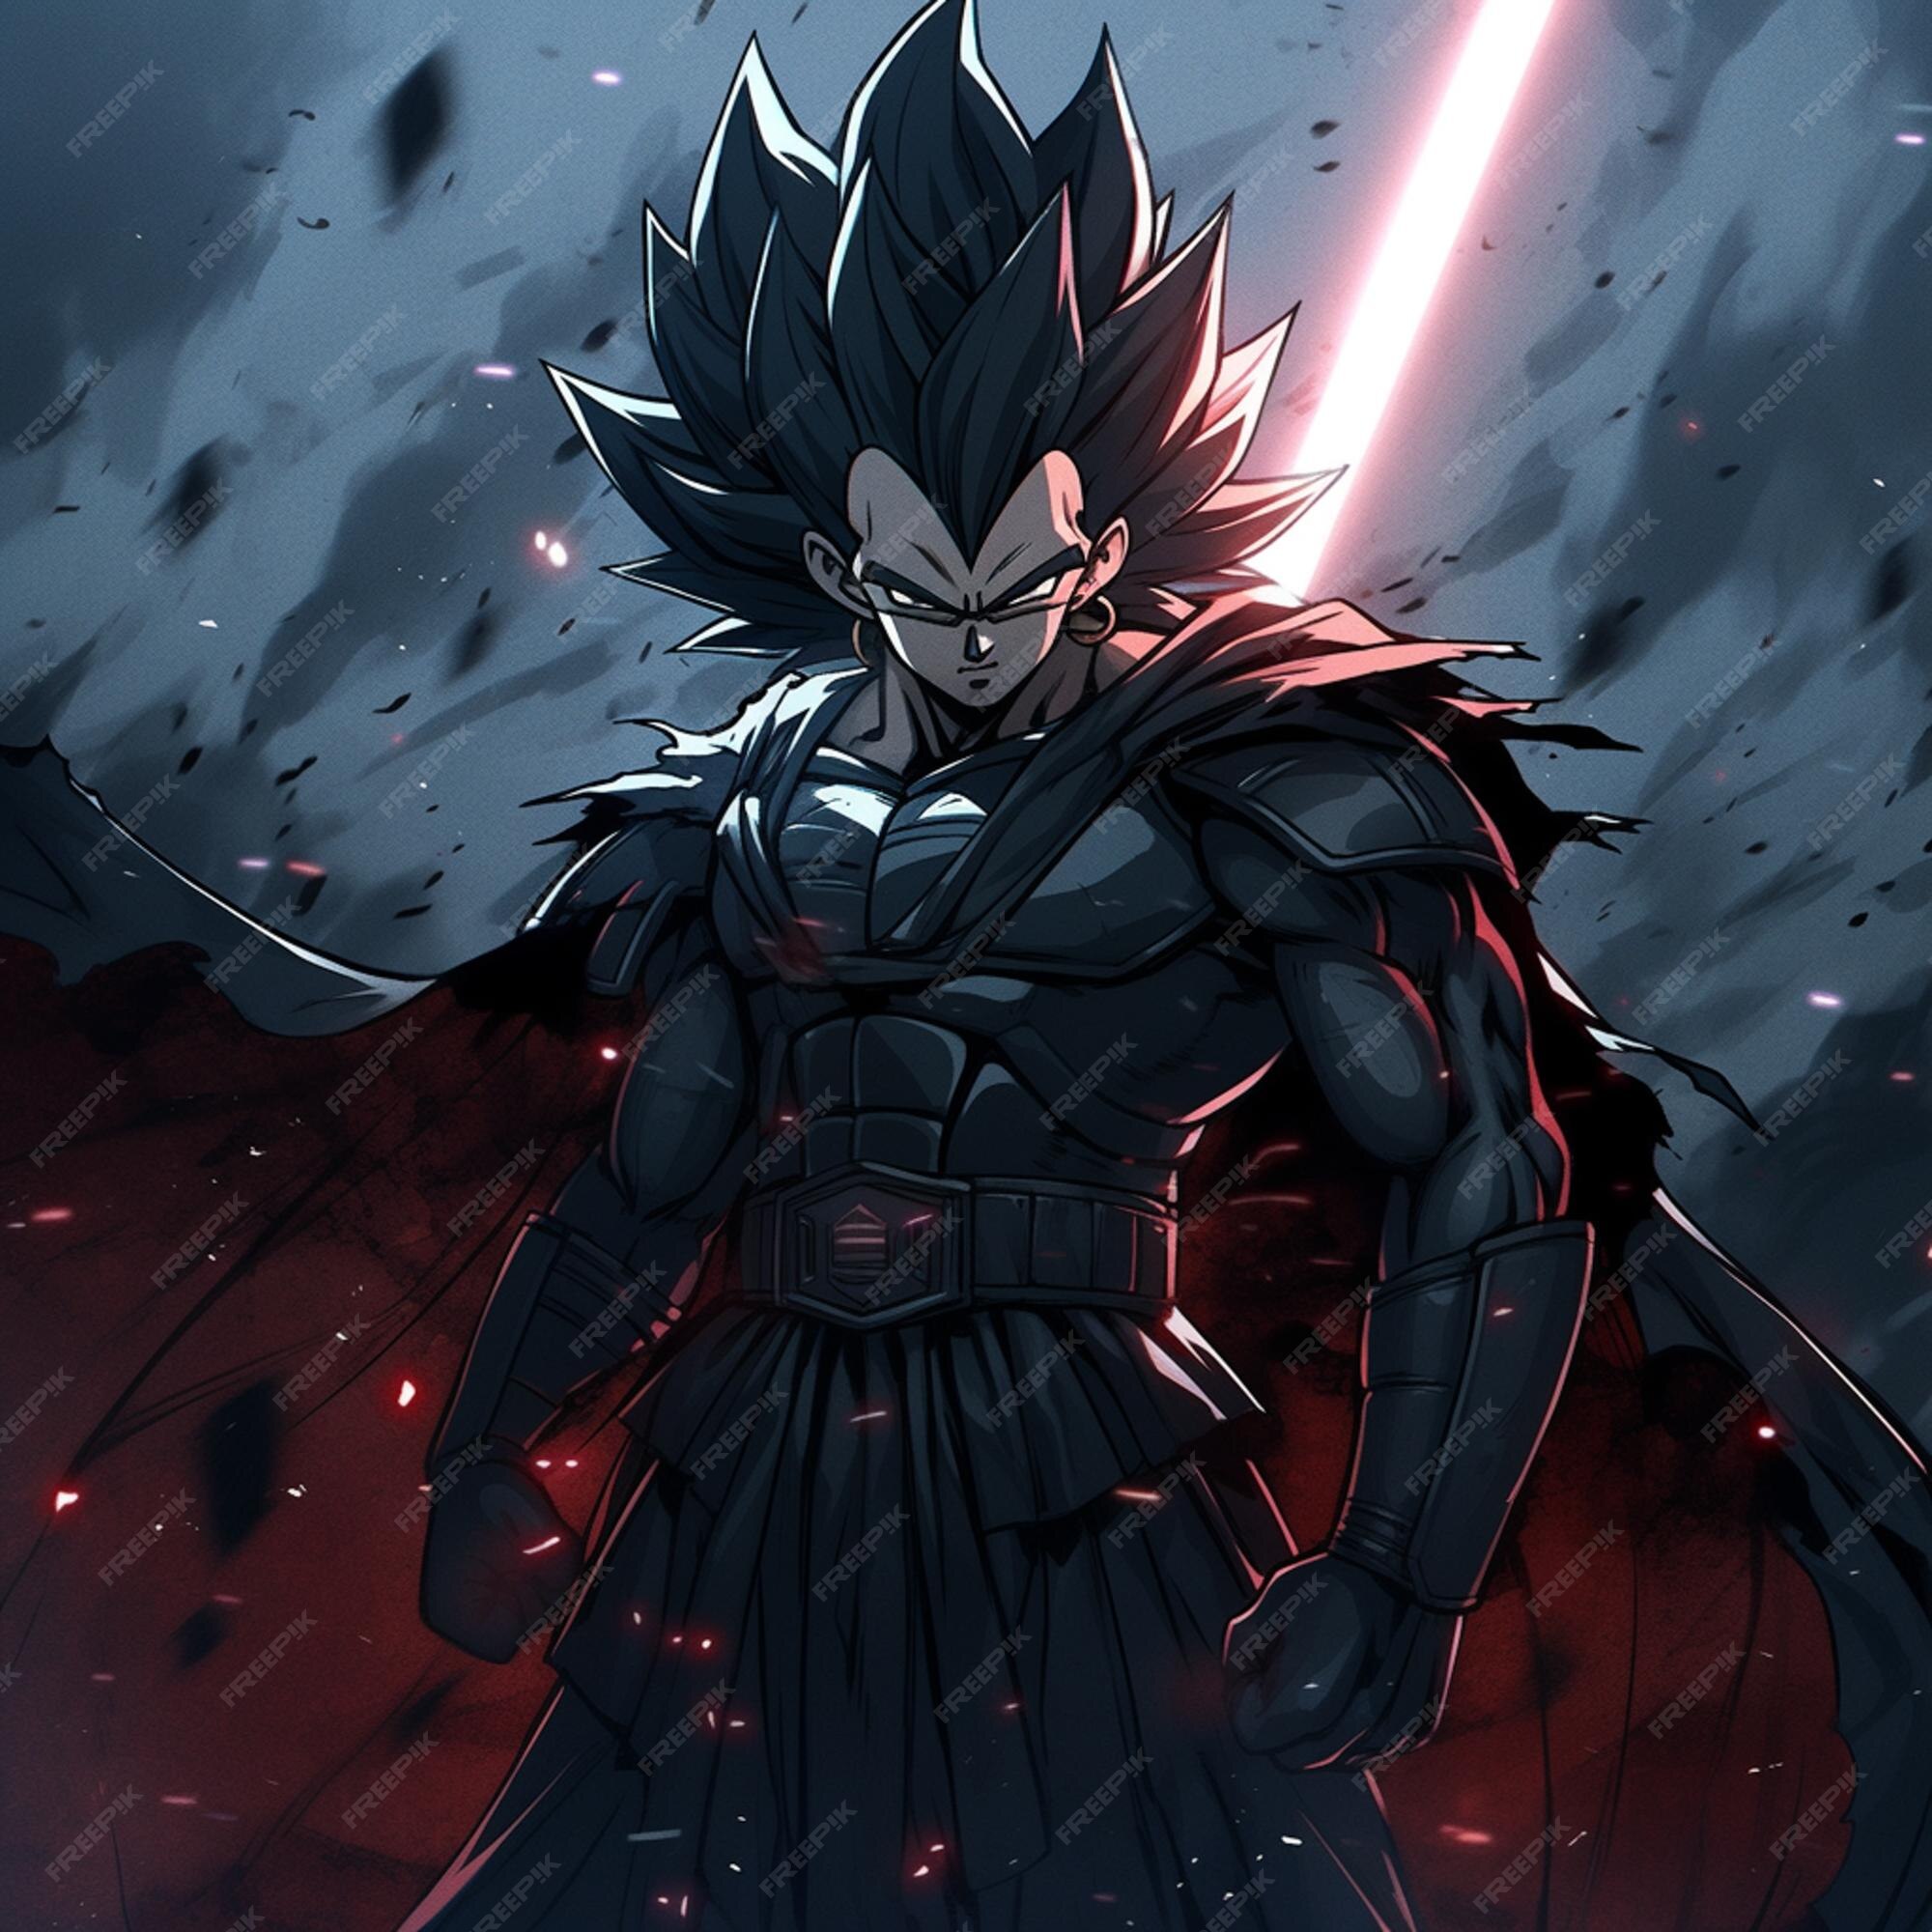 Goku Black de Perfil, black Son Goku standing transparent